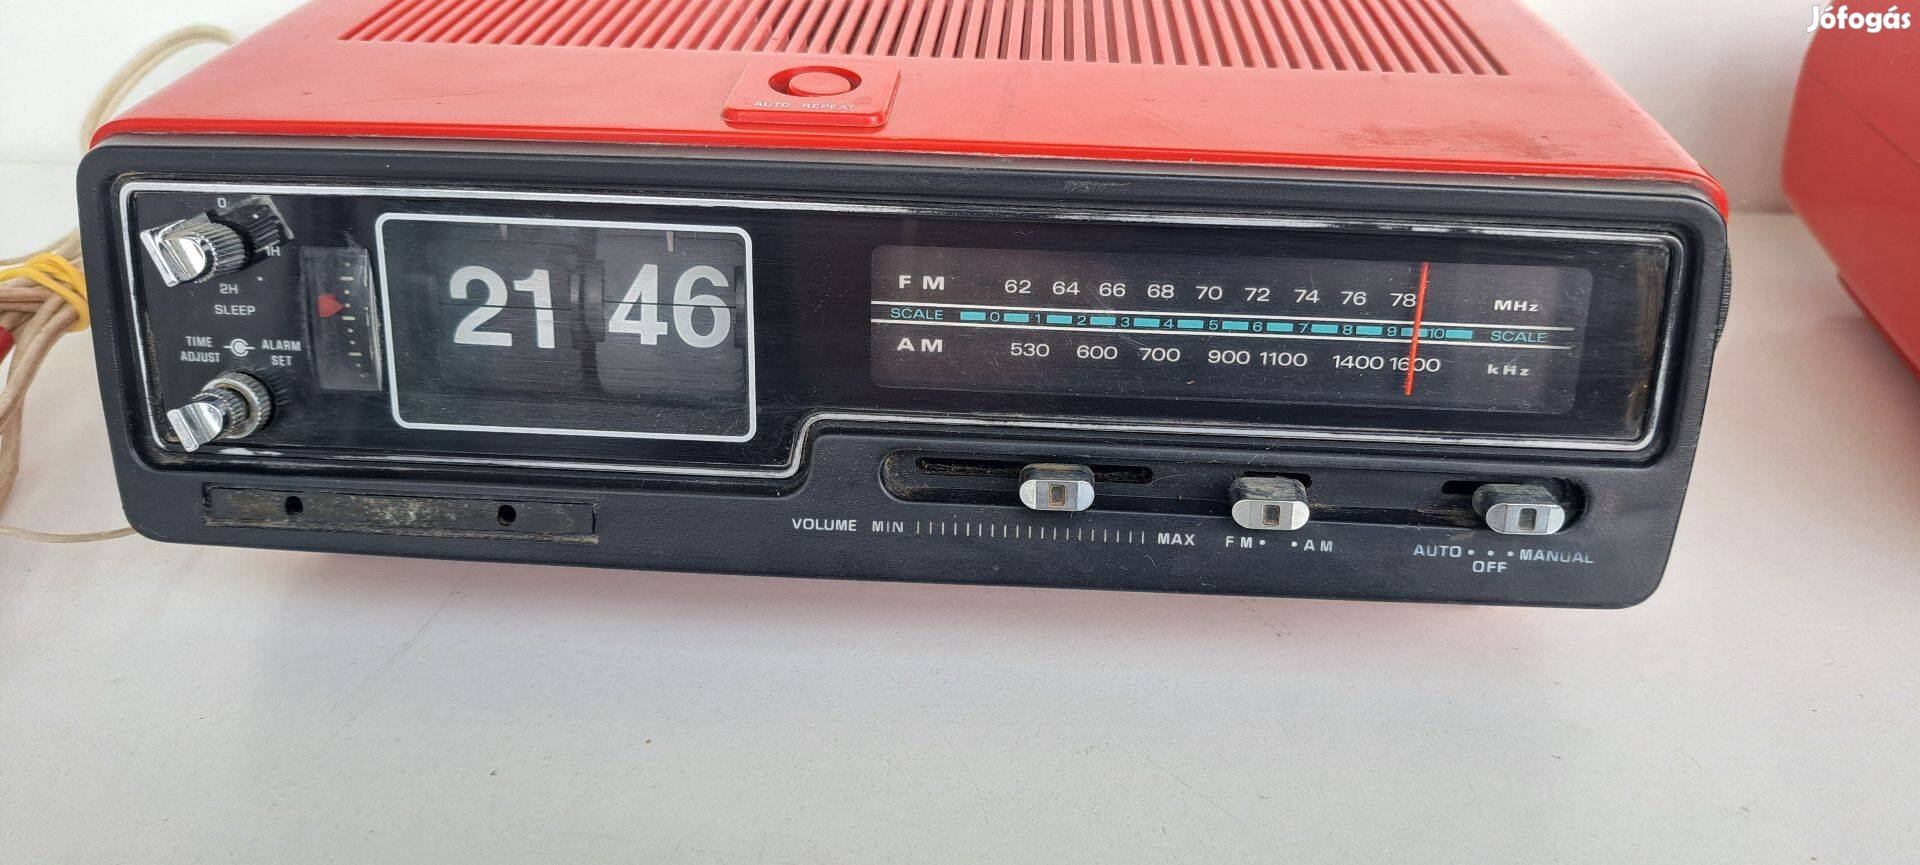 Sanyo ejtőszámlapos rádiós ébresztőóra.70 -es évek